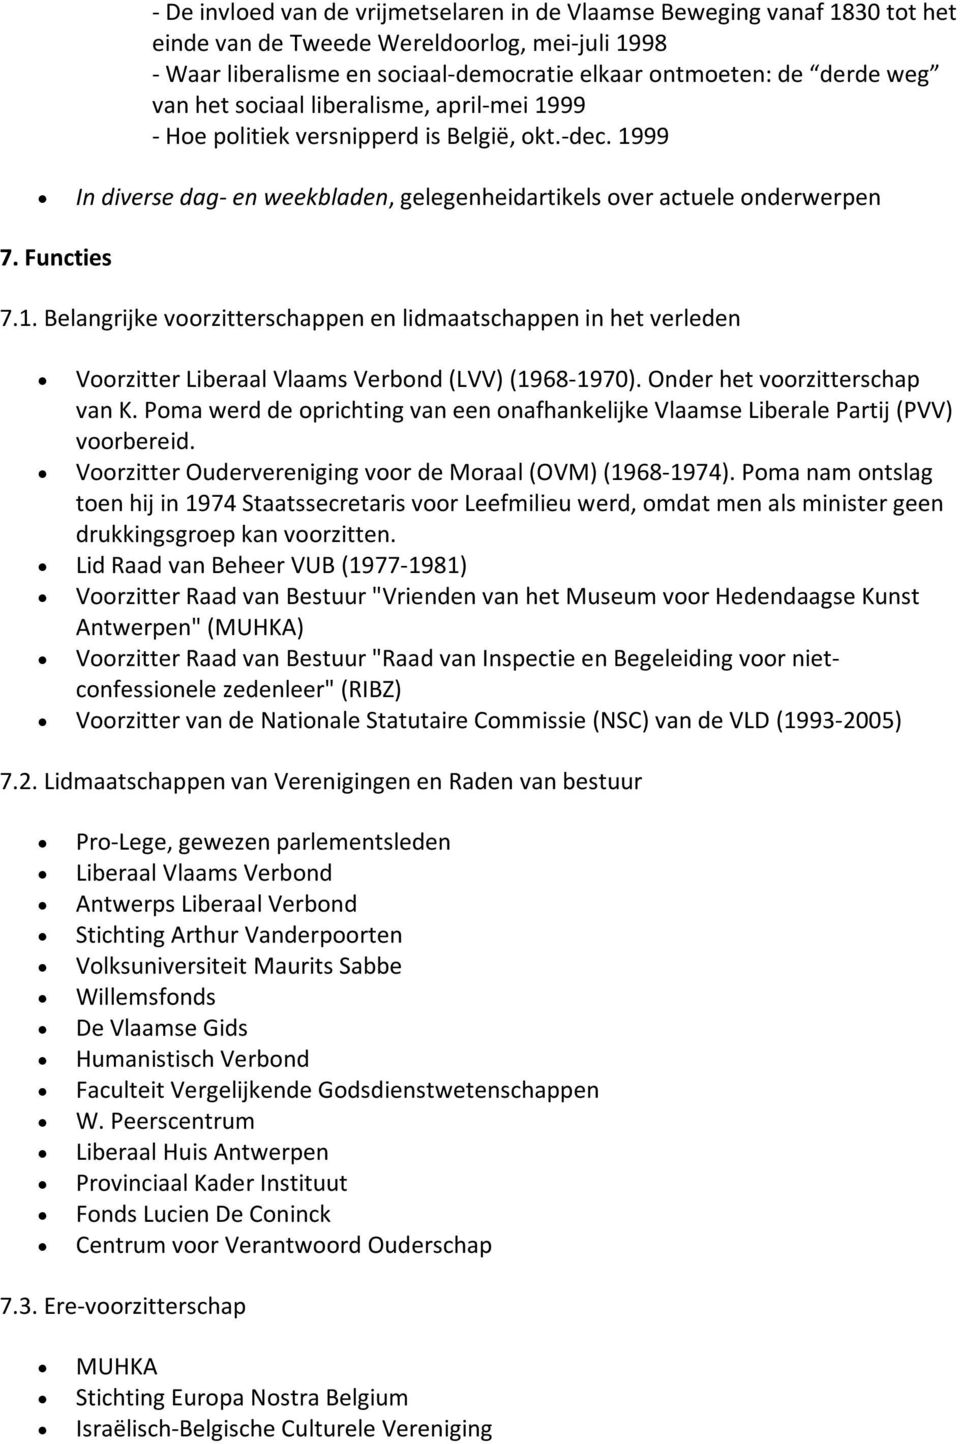 Onder het voorzitterschap van K. Poma werd de oprichting van een onafhankelijke Vlaamse Liberale Partij (PVV) voorbereid. Voorzitter Oudervereniging voor de Moraal (OVM) (1968-1974).